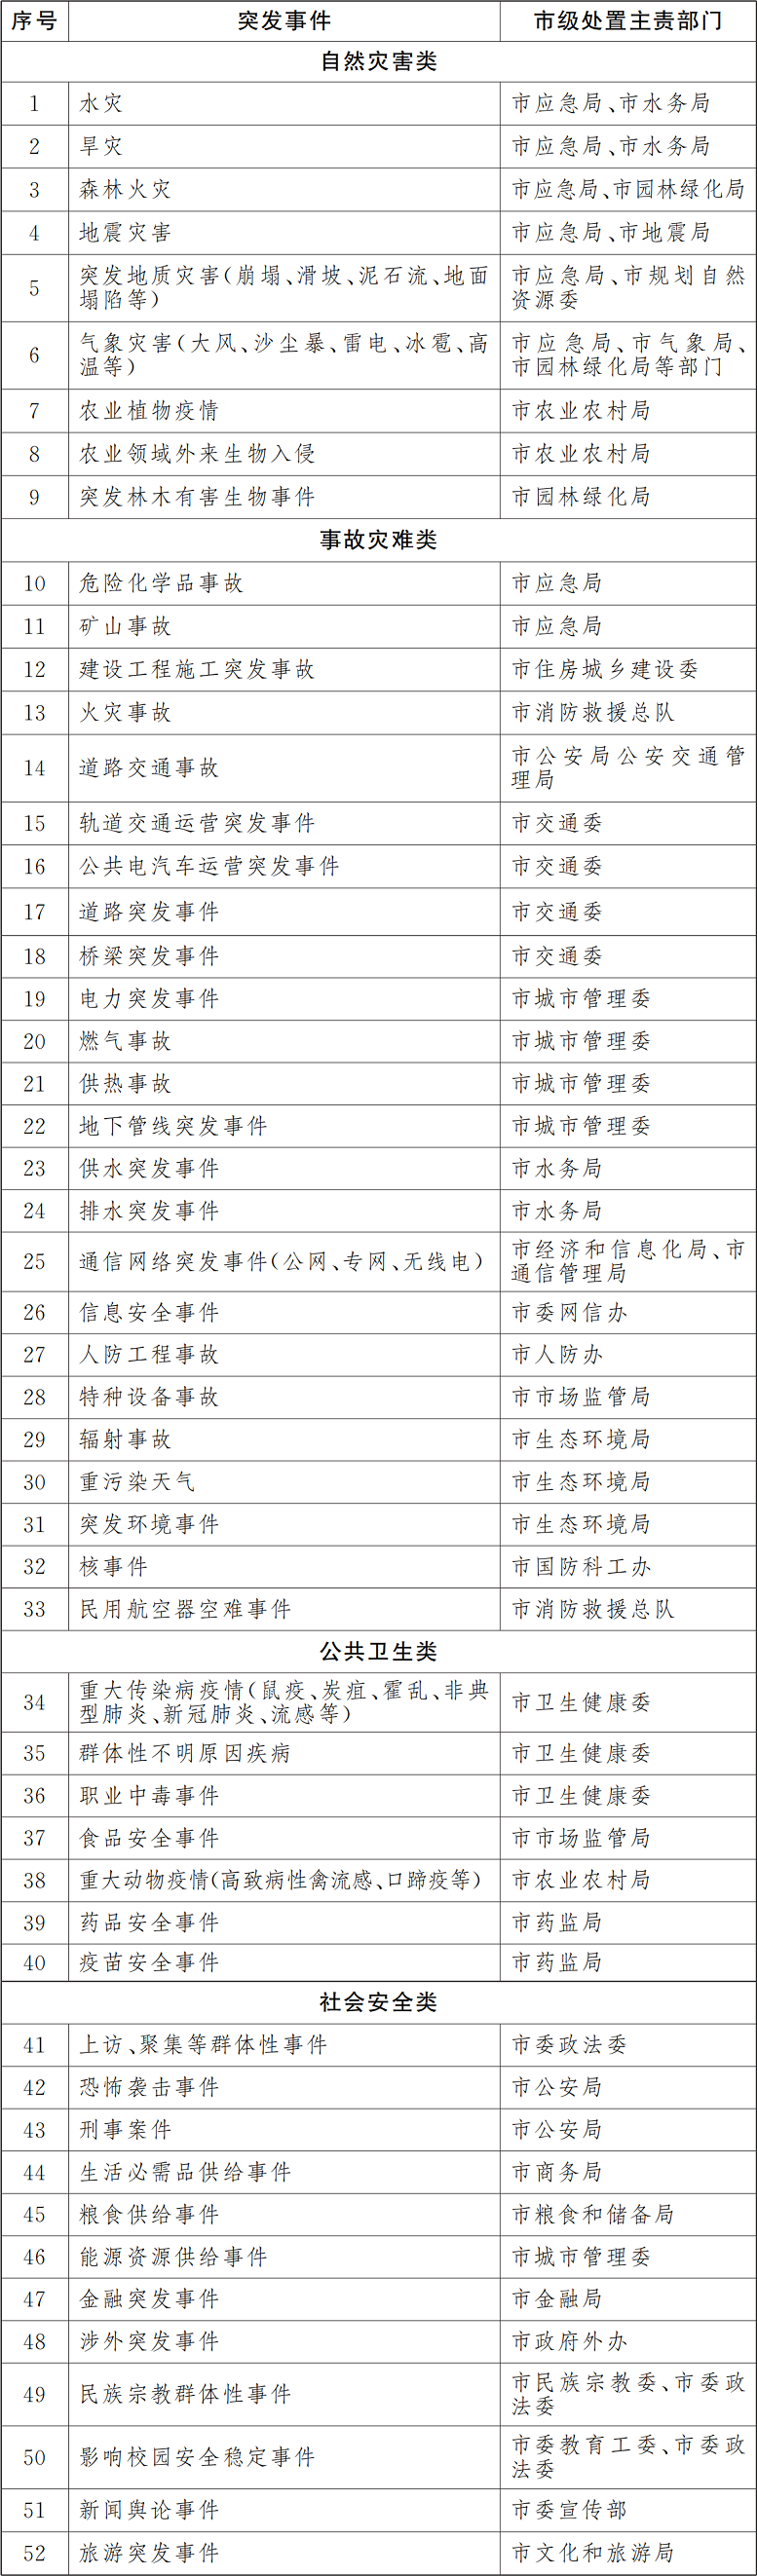 北京市突发事件总体应急预案(2021年修订)